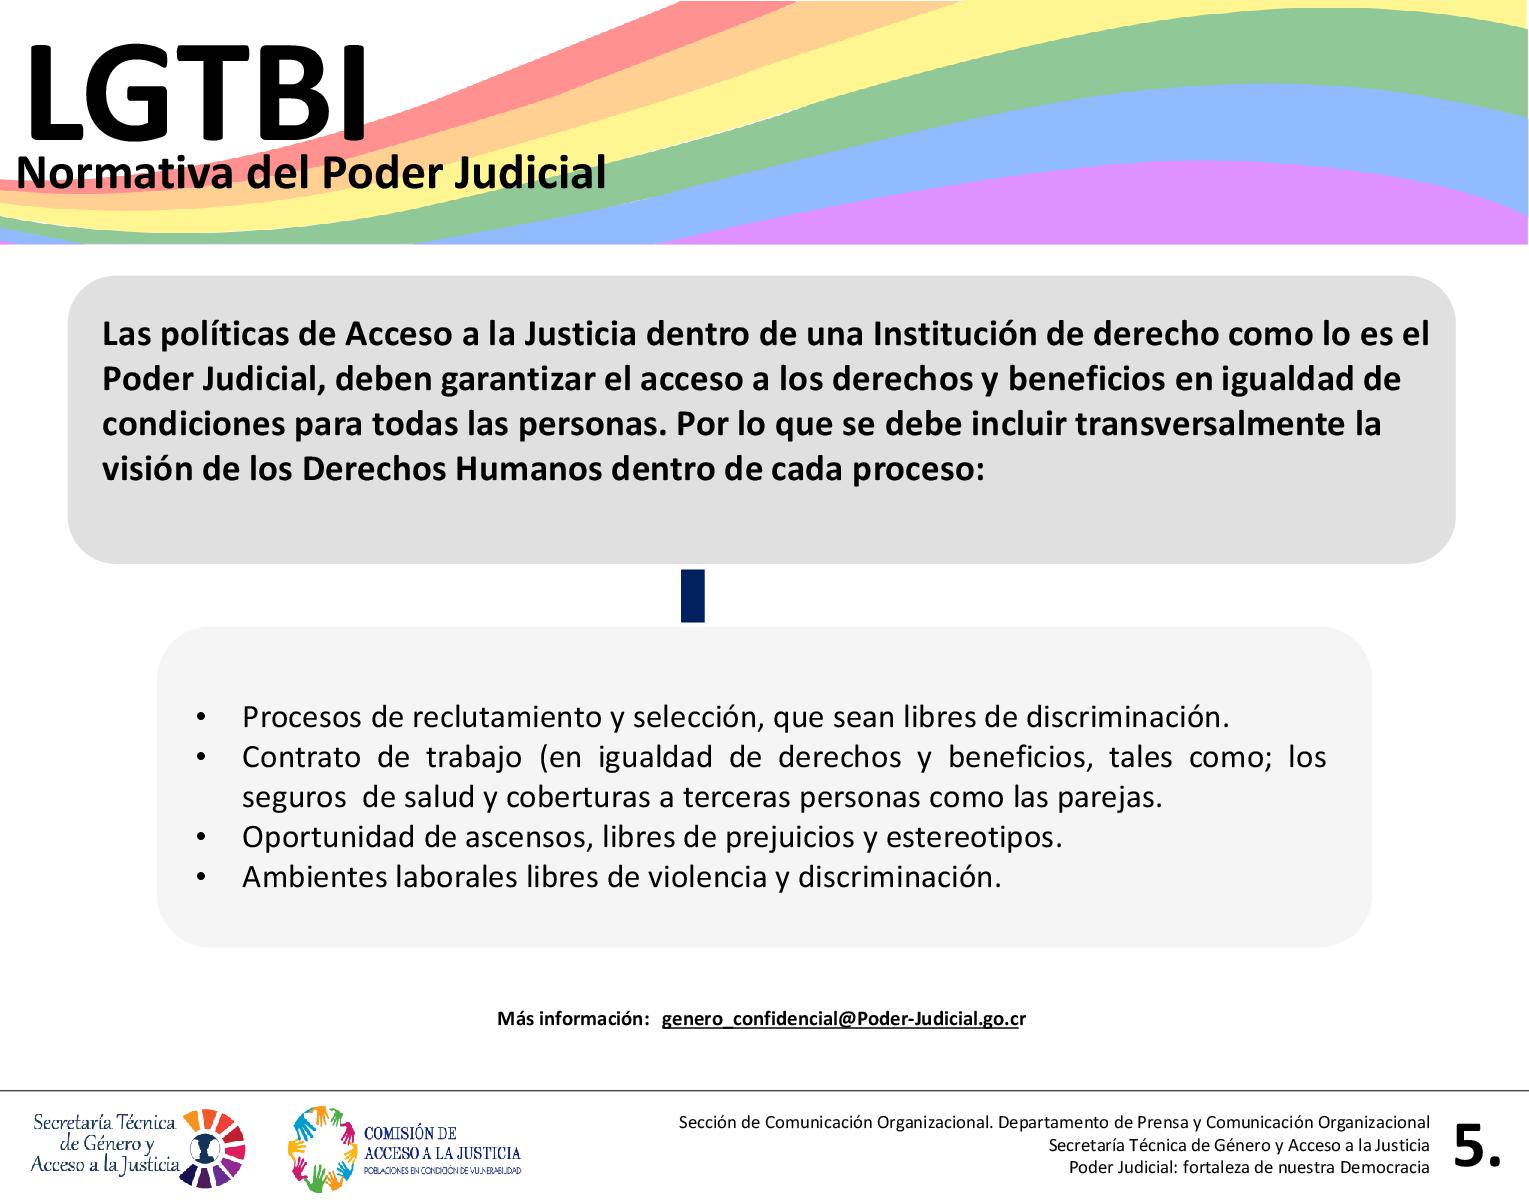 LGTBI: Normativa del Poder Judicial